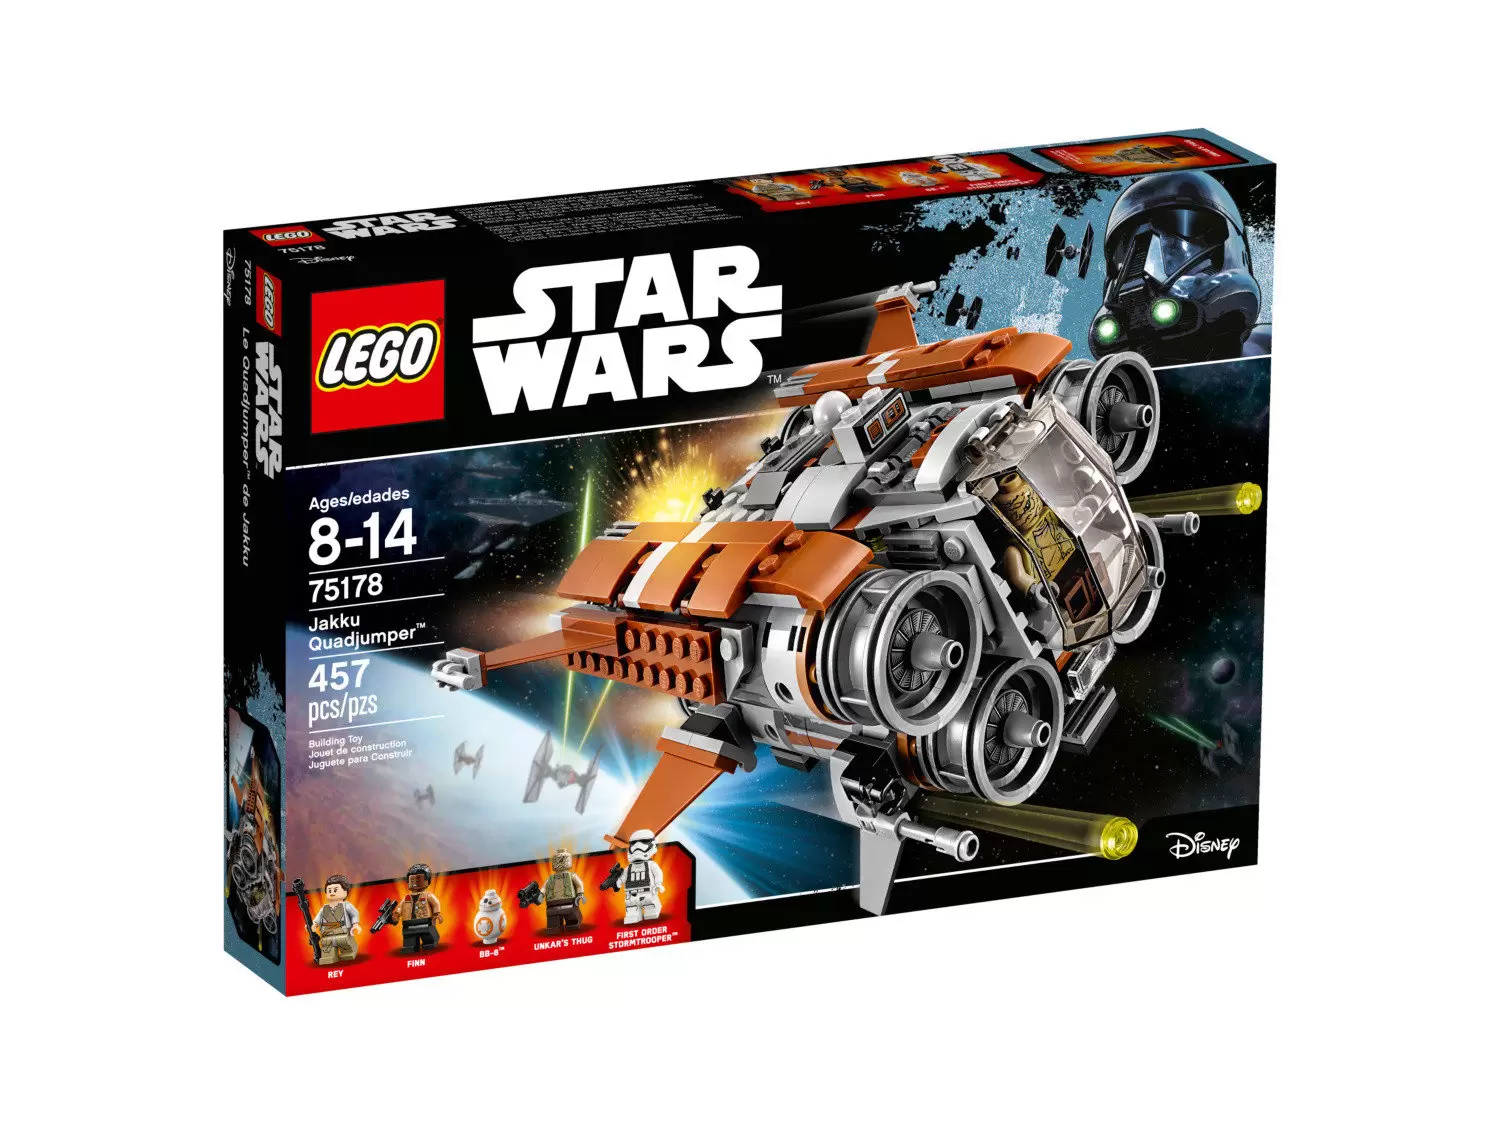 LEGO Star Wars - Jakku Quadjumper